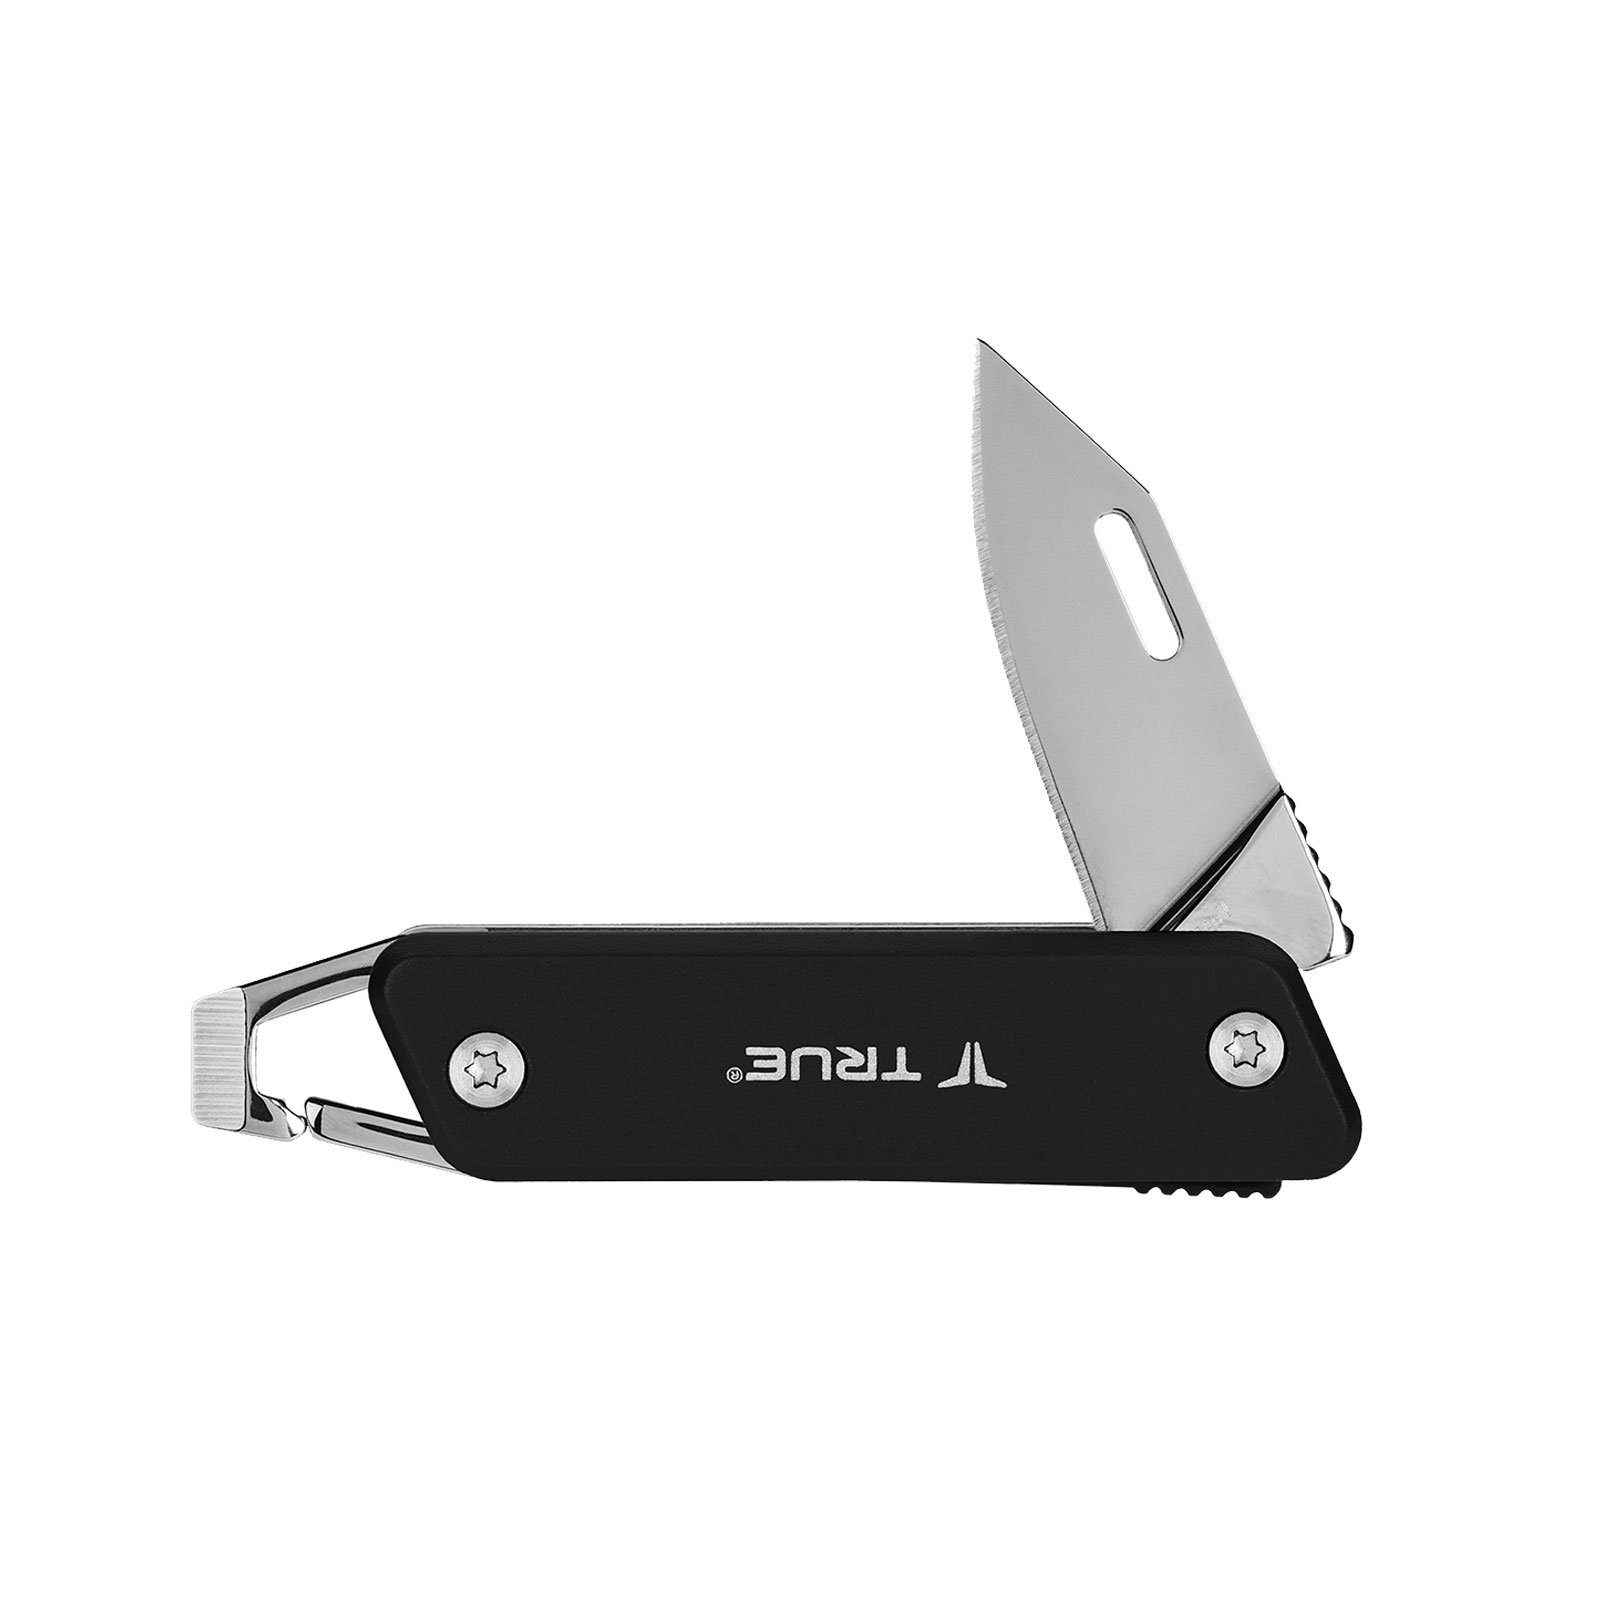 True Tool Chain Schlüsselanhänger Taschenmesser Key Mini Utility Messer Taschenmesser Knife, schwarz